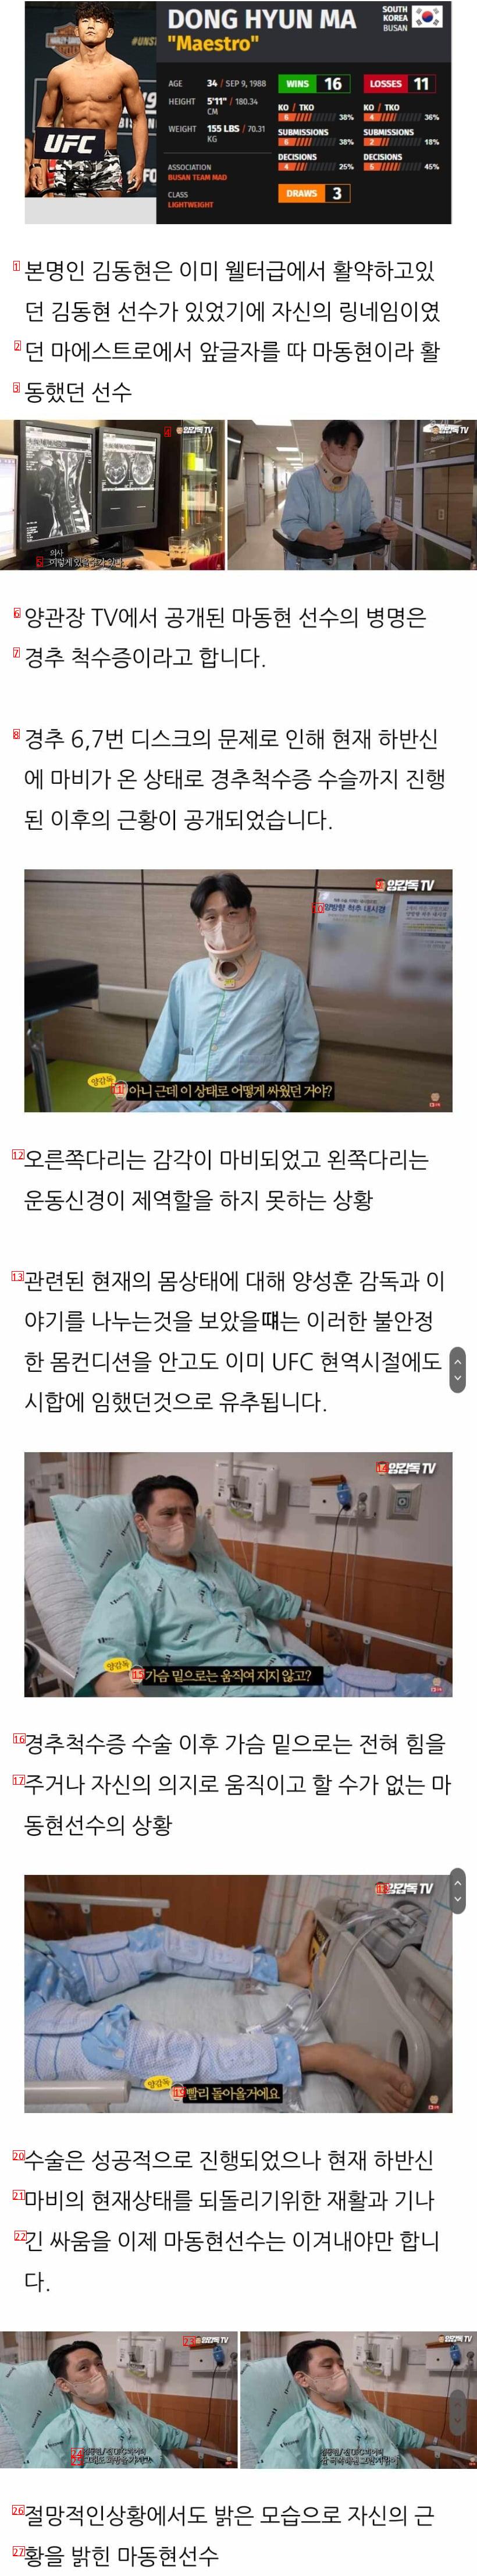 하반신 마비가 온 전 UFC 선수 김동현(마동현)..jpg